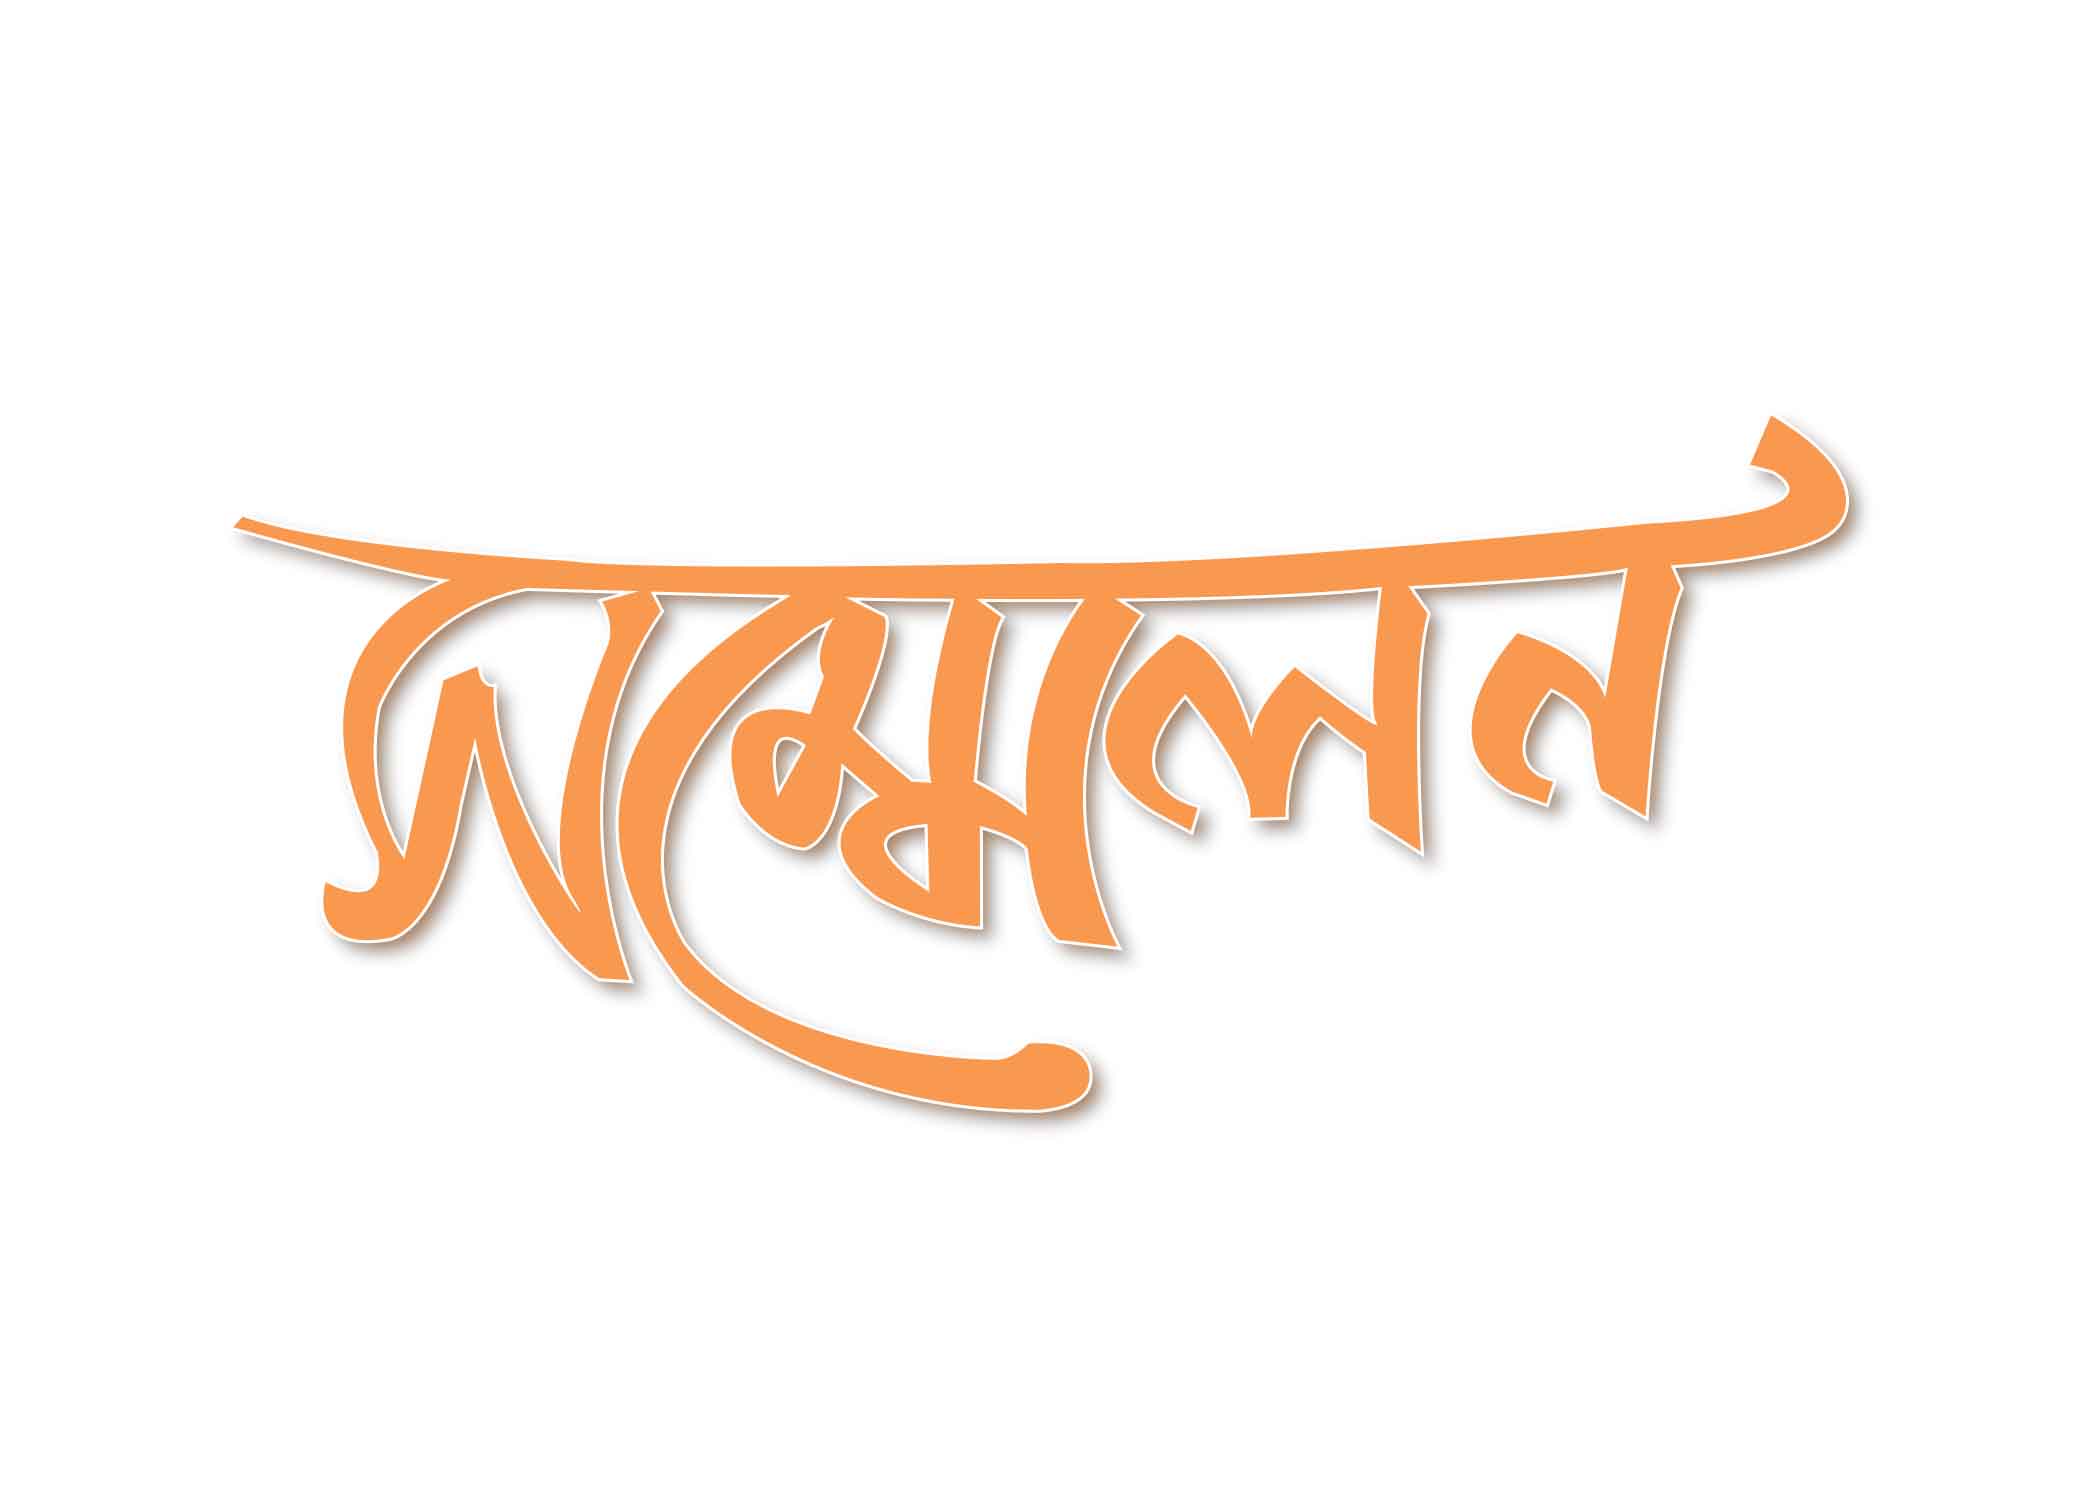 সম্মেলন টাইপোগ্রাফি । Bangla Typhography PNG